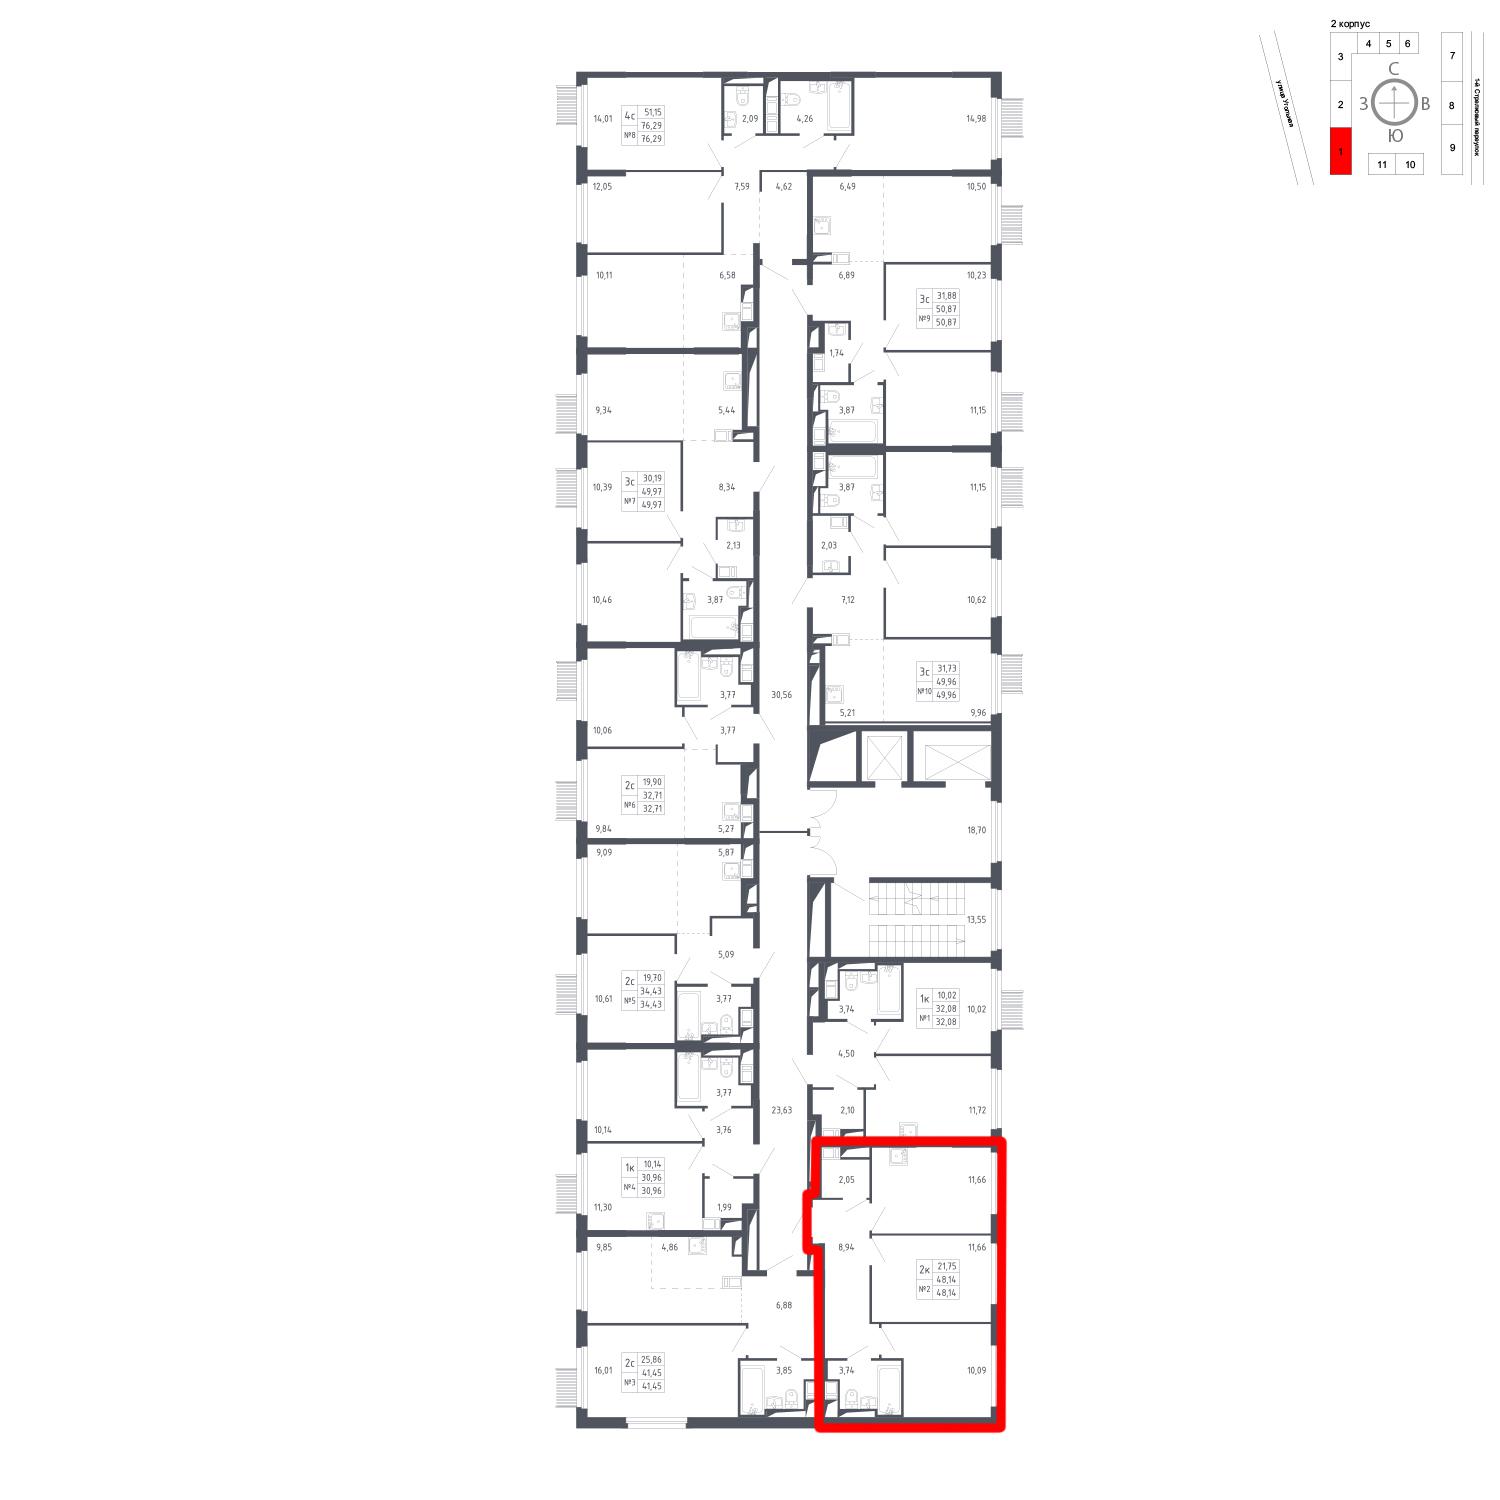 Продаётся 2-комнатная квартира в новостройке 48.1 кв.м. этаж 9/17 за 8 603 126 руб 